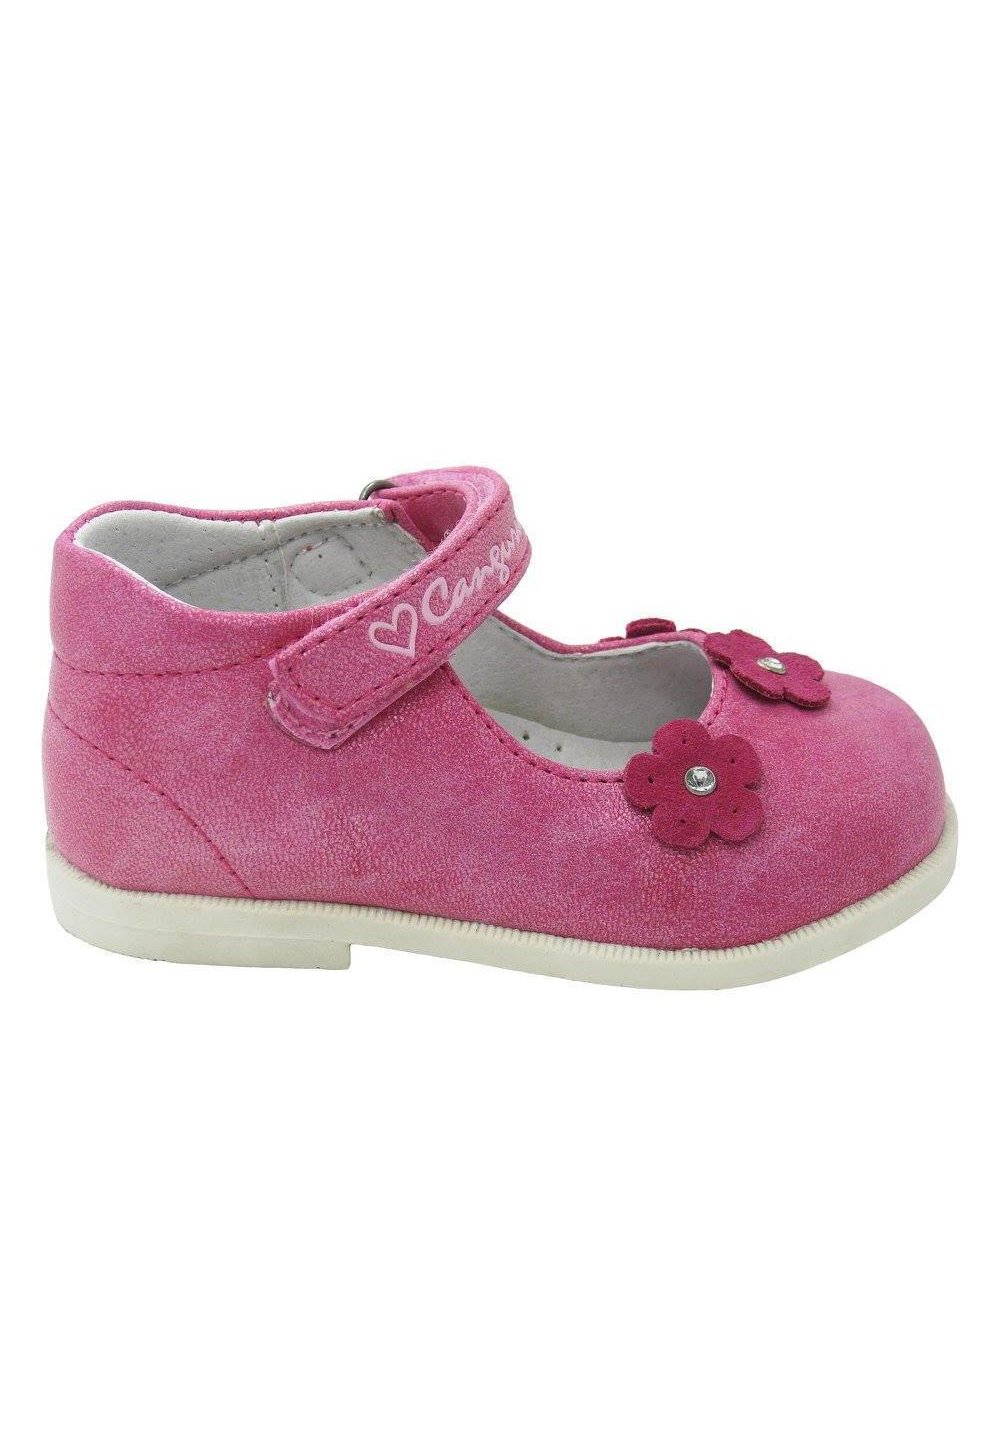 Pantofi fete, roz cu floricele Prichindel